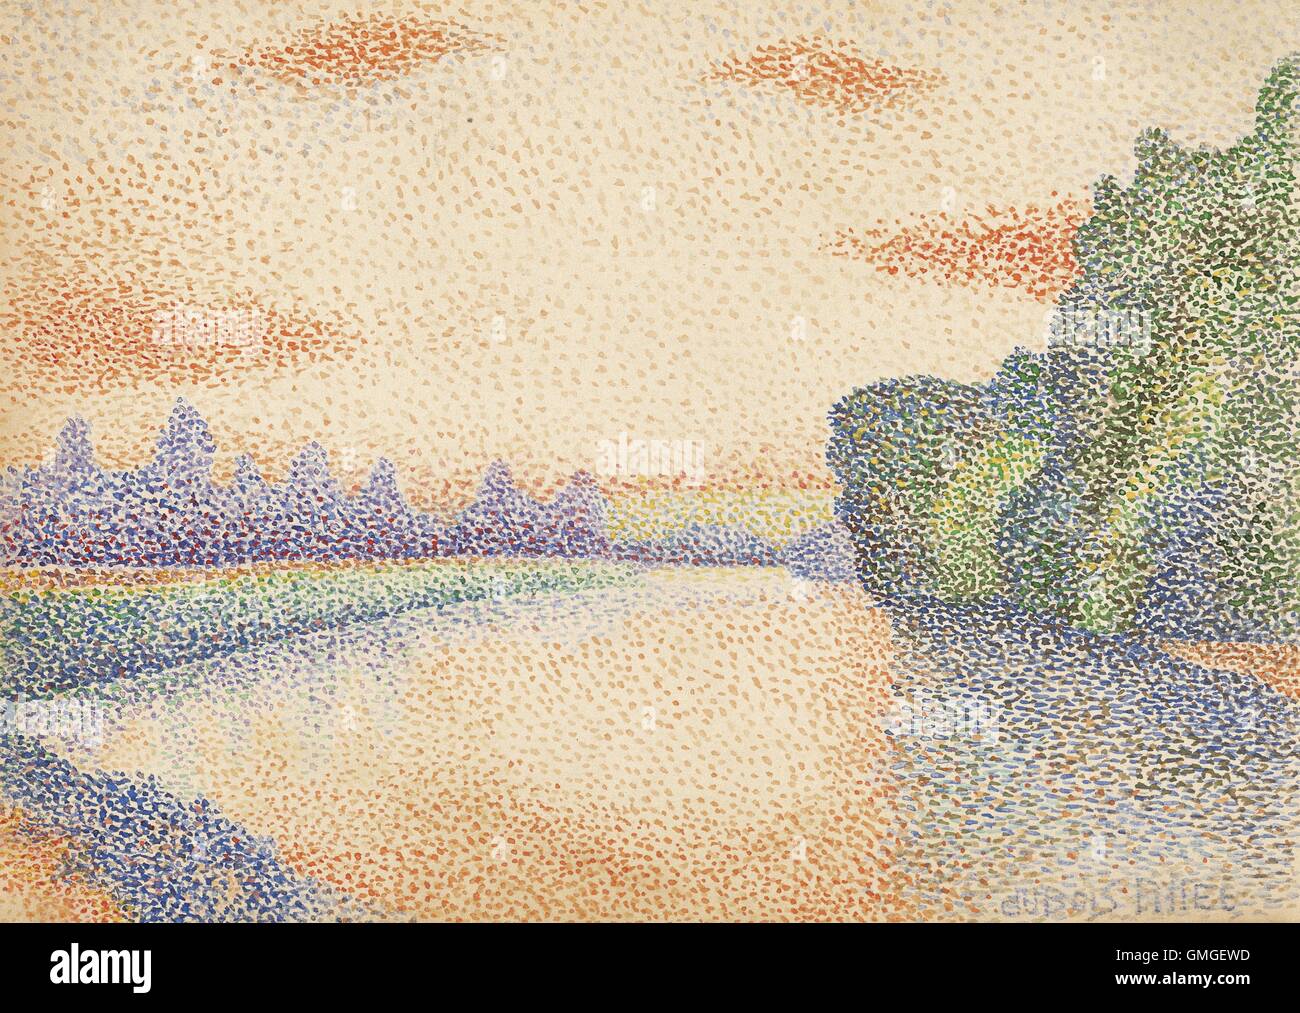 Die Ufer der Marne in der Morgendämmerung, von Albert Dubois-Pillet, französische 1888, post-impressionistischen Aquarellmalerei. Die pointillistische Technik schafft ein Gesamtbild durch kleine Farbtupfer (BSLOC 2016 6 26) Stockfoto